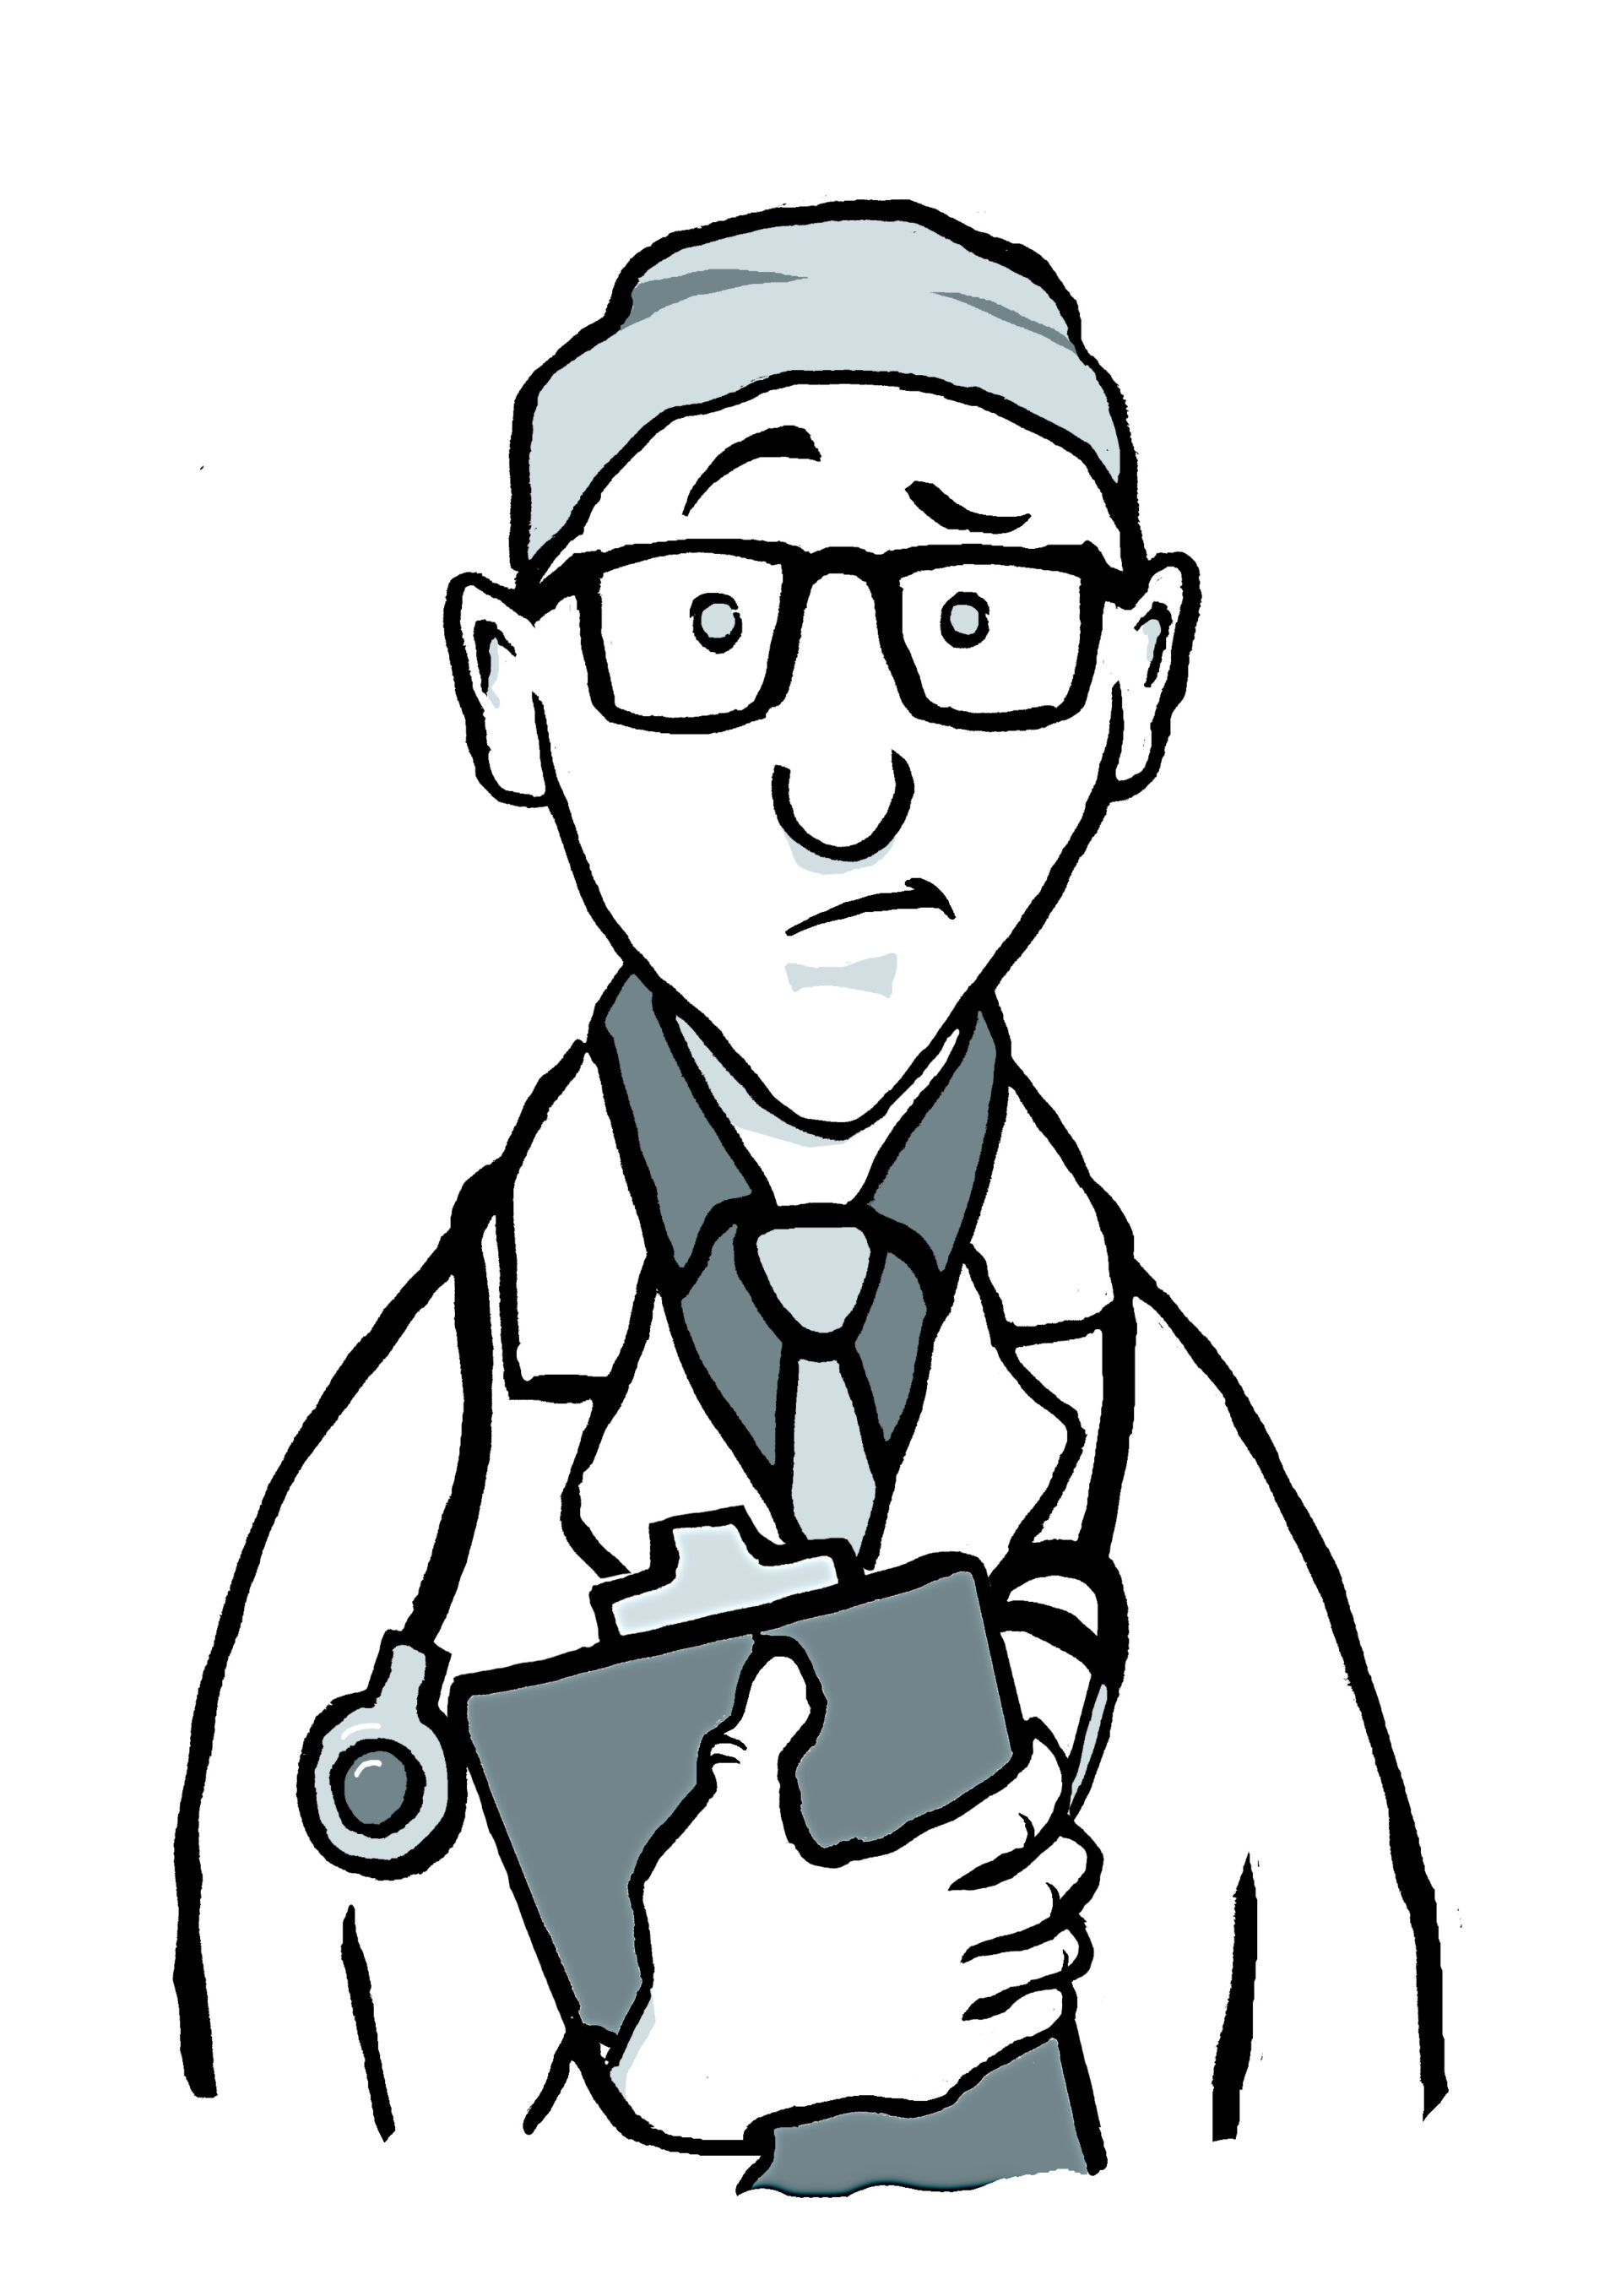 Piirroskuva. Hölmistyneen näköinen lääkärihahmo valkoisessa takissa, stetoskooppi kaulassa ja potilaskansio kädessä.